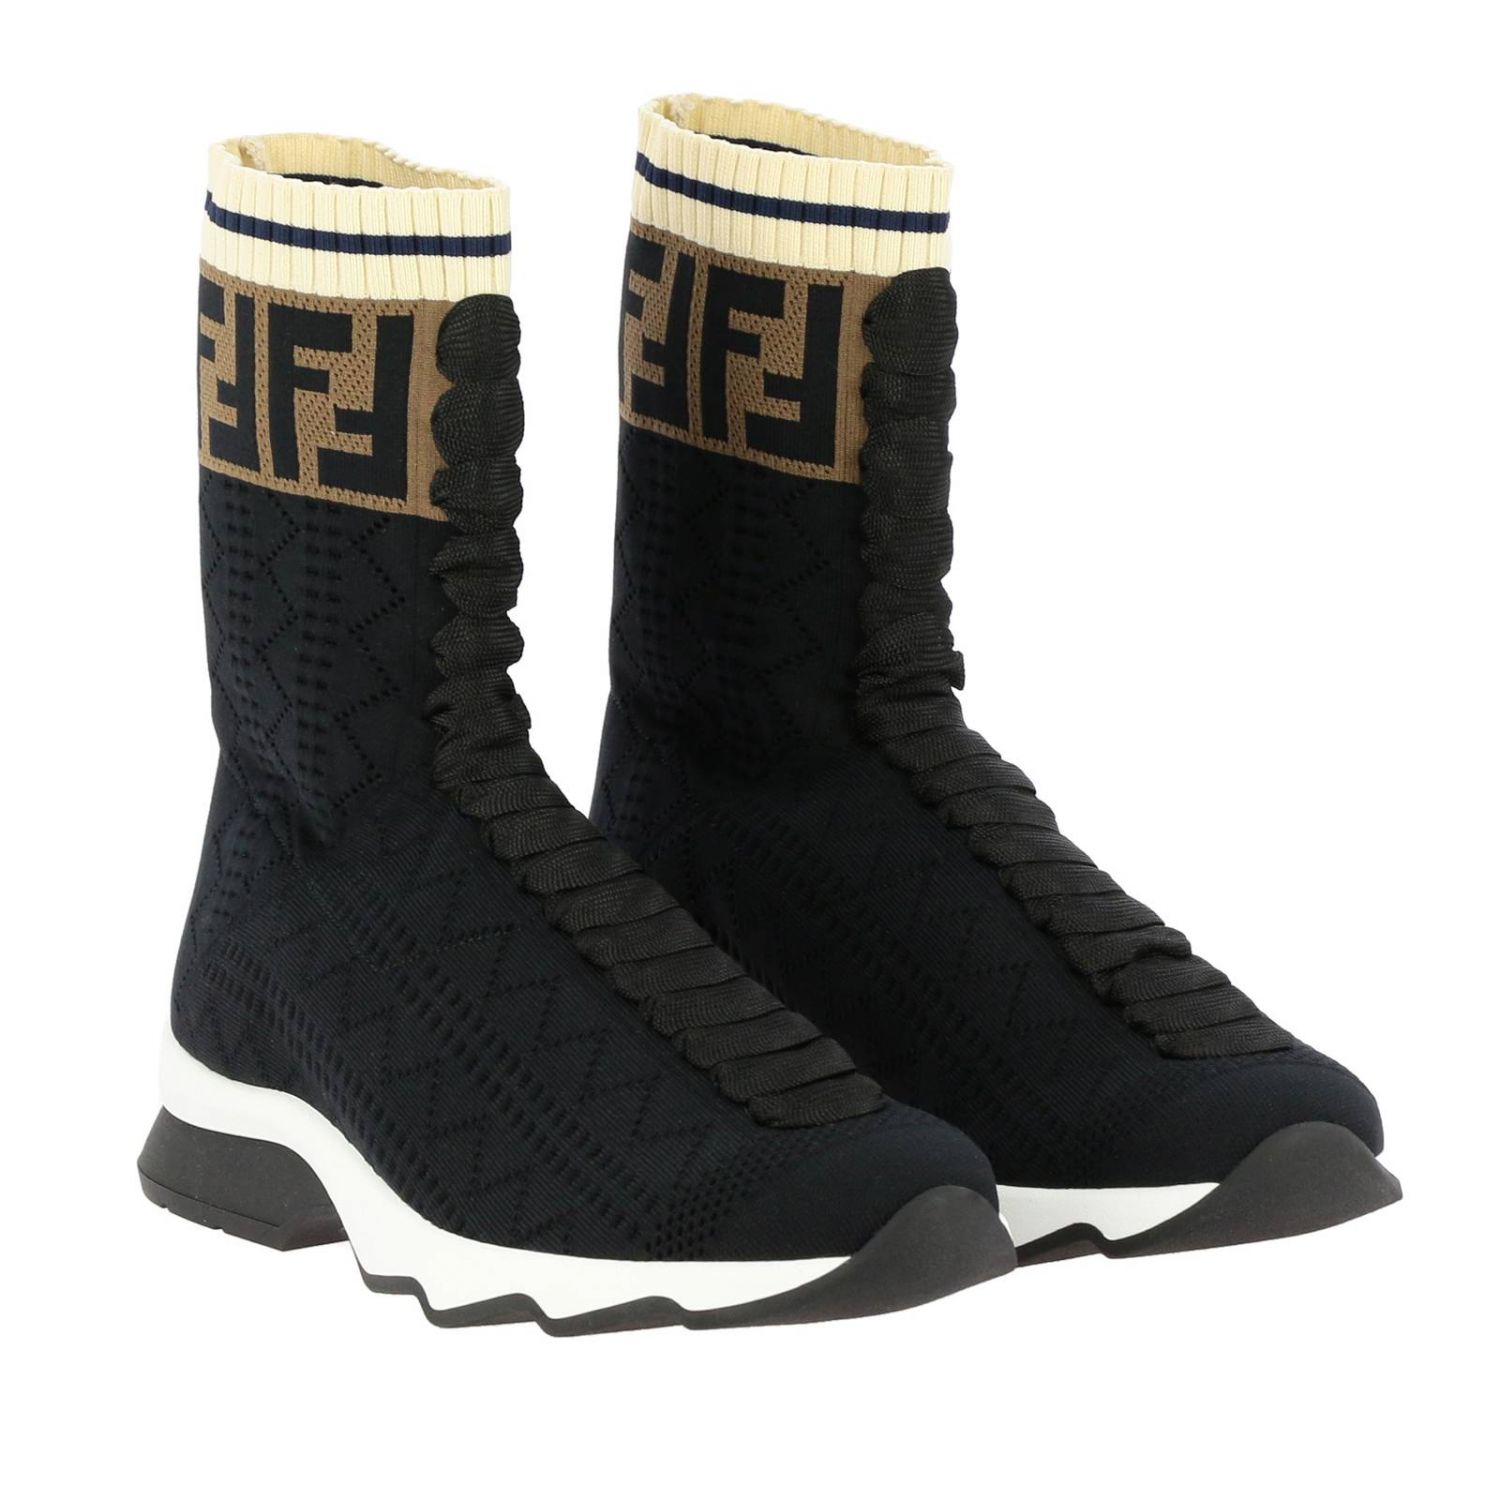 FENDI: Boots women | Sneakers Fendi Women Black | Sneakers Fendi 8T6515 ...